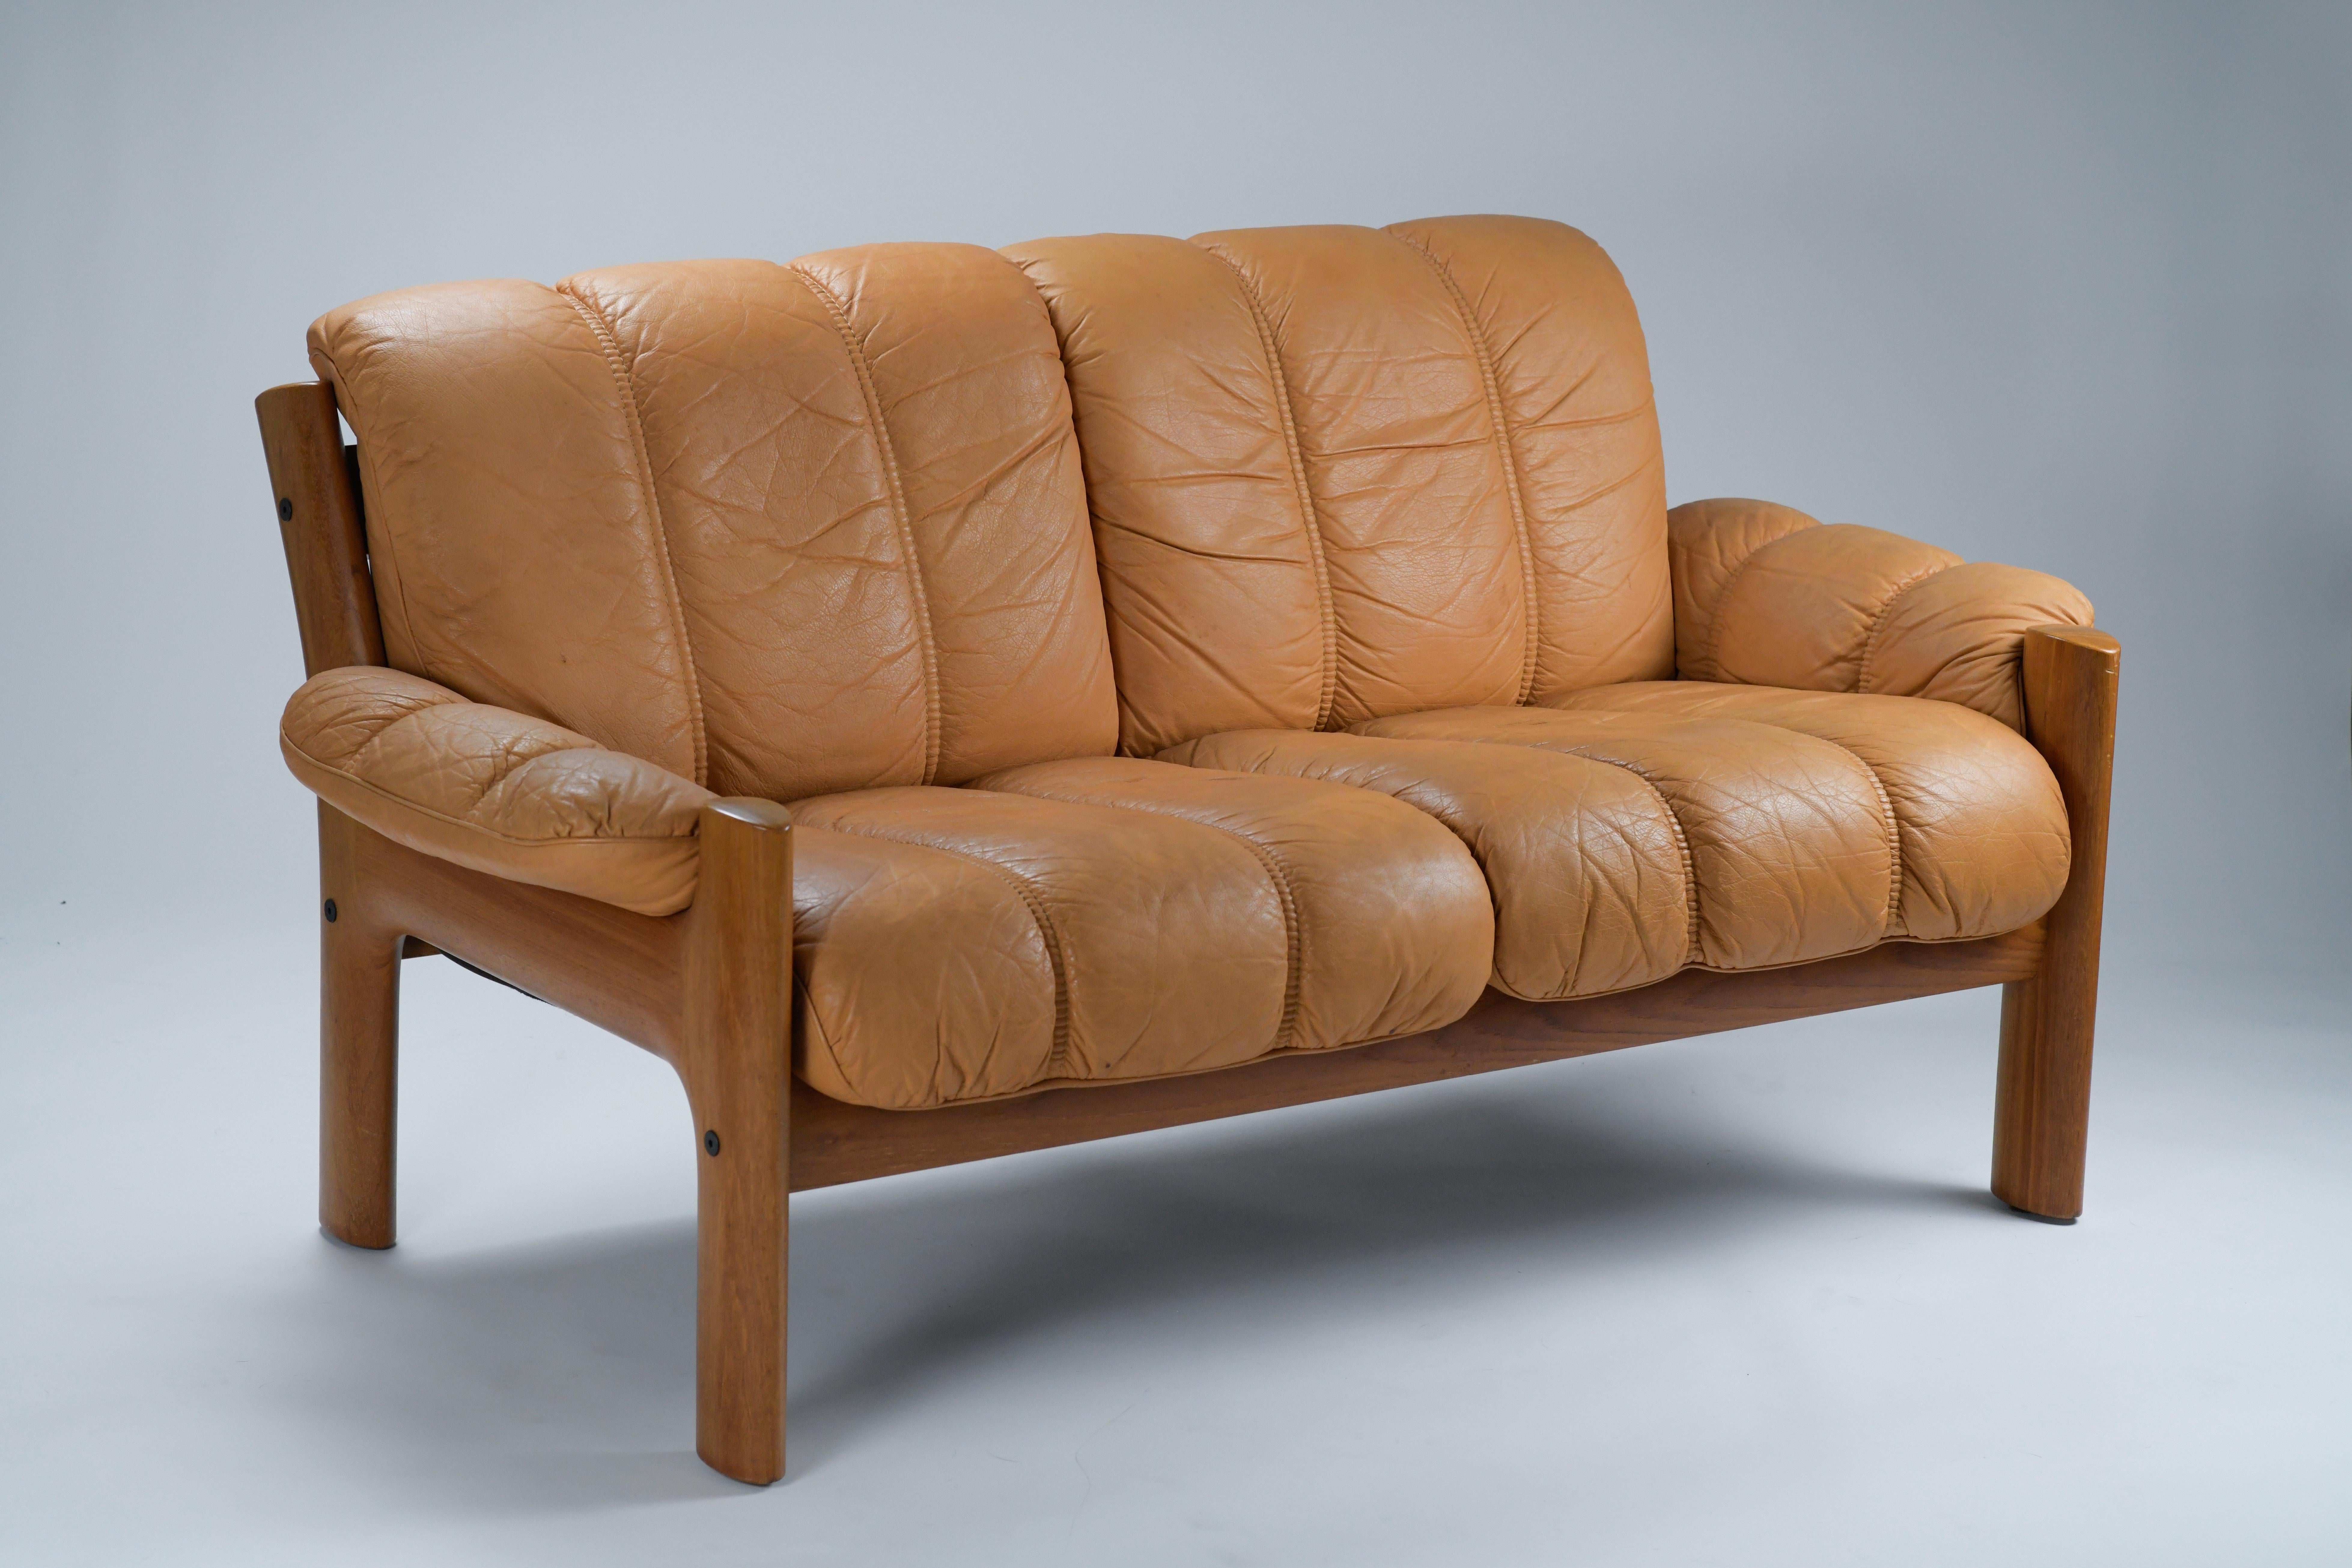 Causeuse en cuir orange brûlé des années 1970 de la marque Ekornes. Ce canapé deux places a été conçu et fabriqué par Ekornes en Norvège au début des années 70. Ce canapé incroyablement confortable présente un profil organique avec de belles courbes